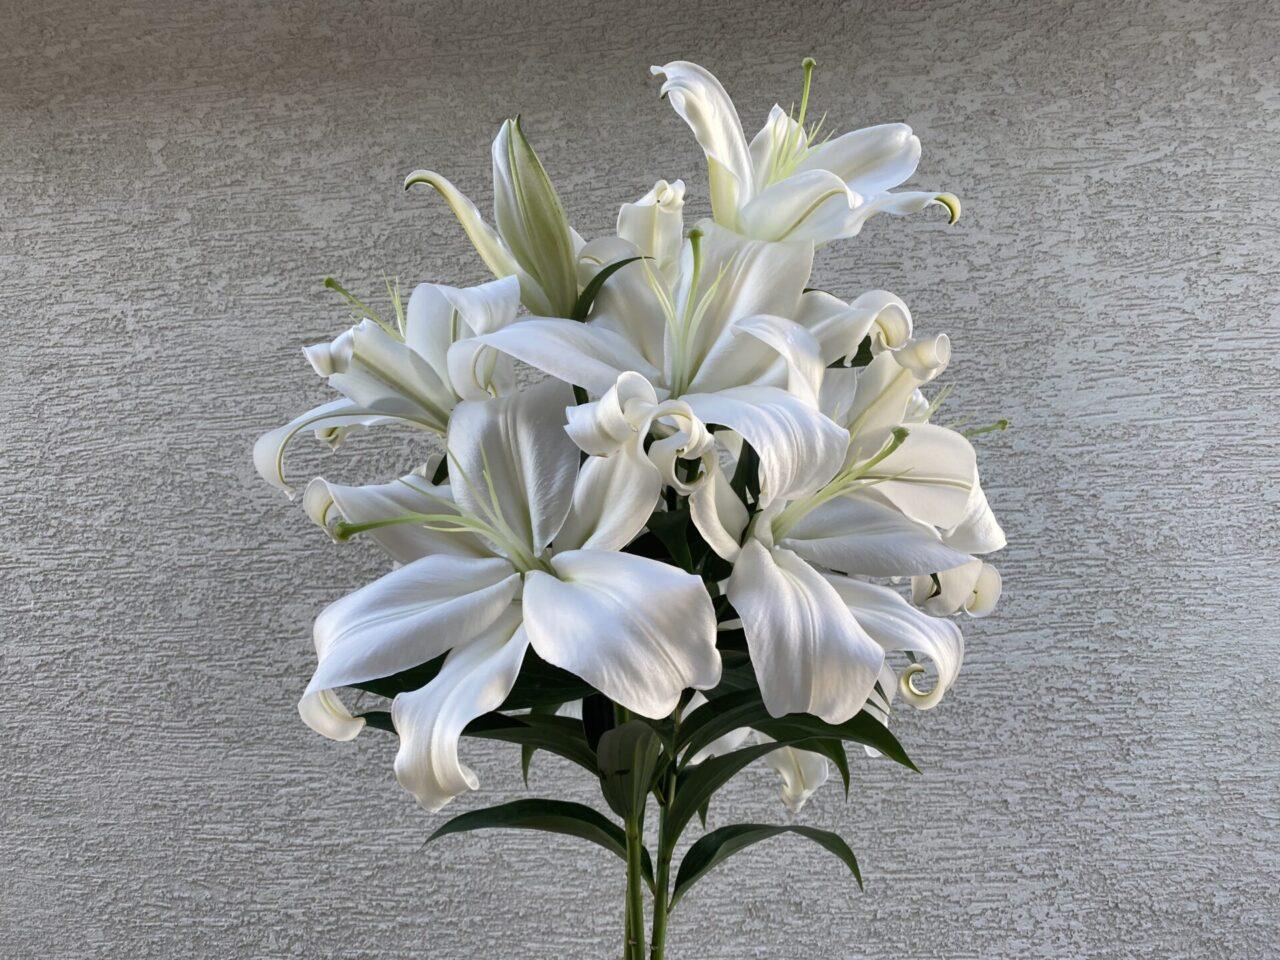 ザンベジ白いユリ大輪の花